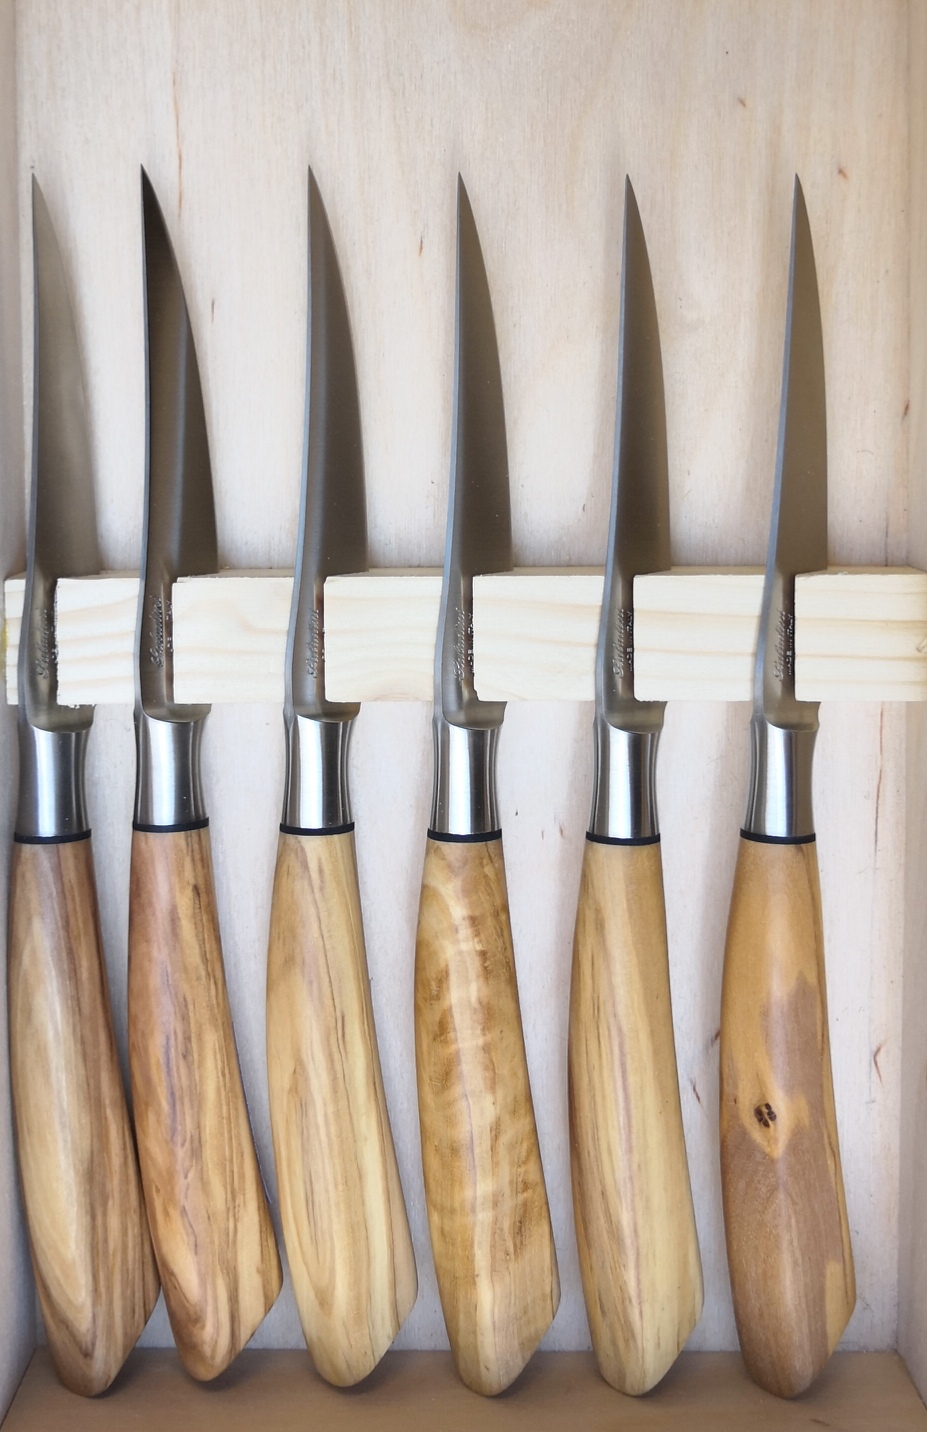 Coltello da Cucina in legno di Olivo - I Coltelli dell'Artigiano